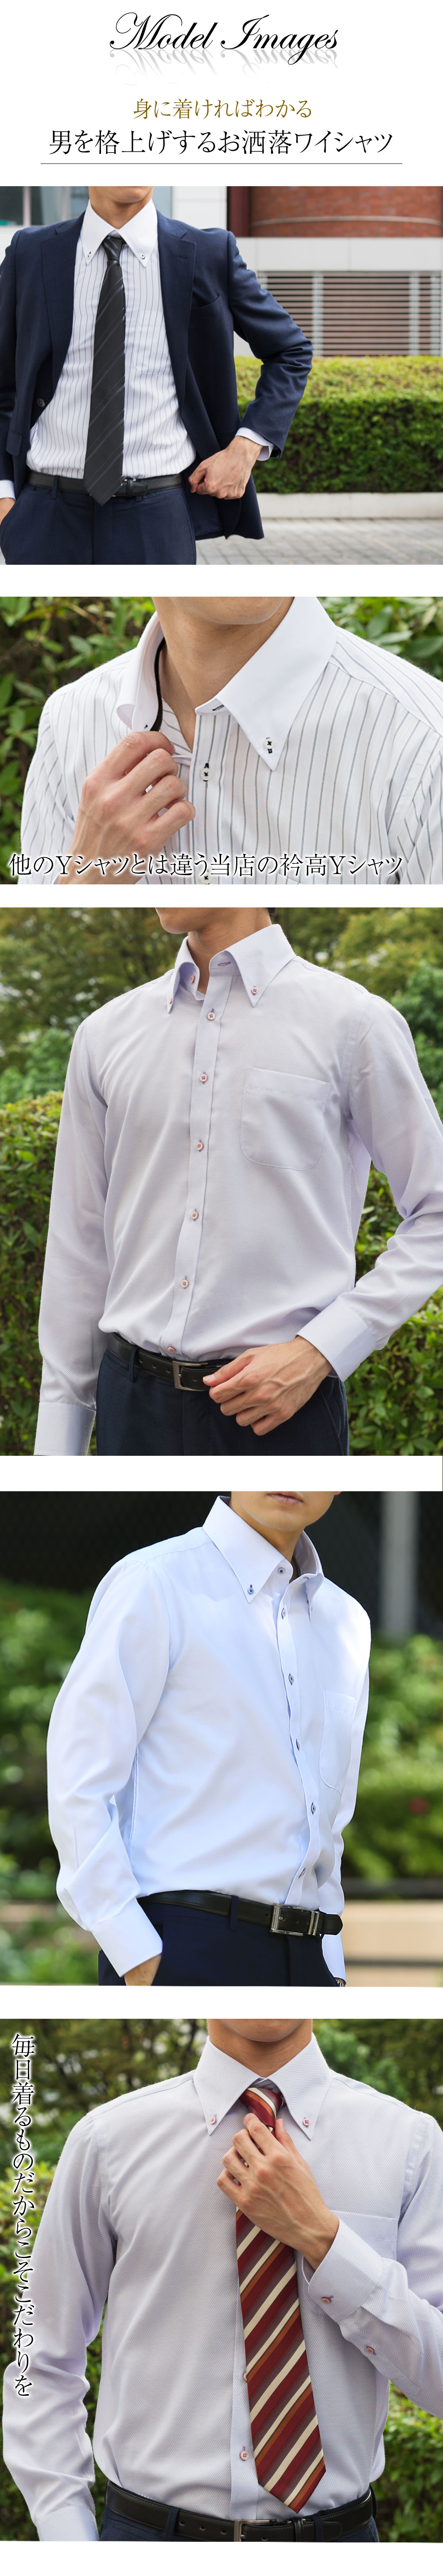 【楽天市場】ワイシャツ メンズ 長袖 選べる5枚セット 形態安定 スマート レギュラー 標準体 Yシャツ ノーアイロン セット カッターシャツ